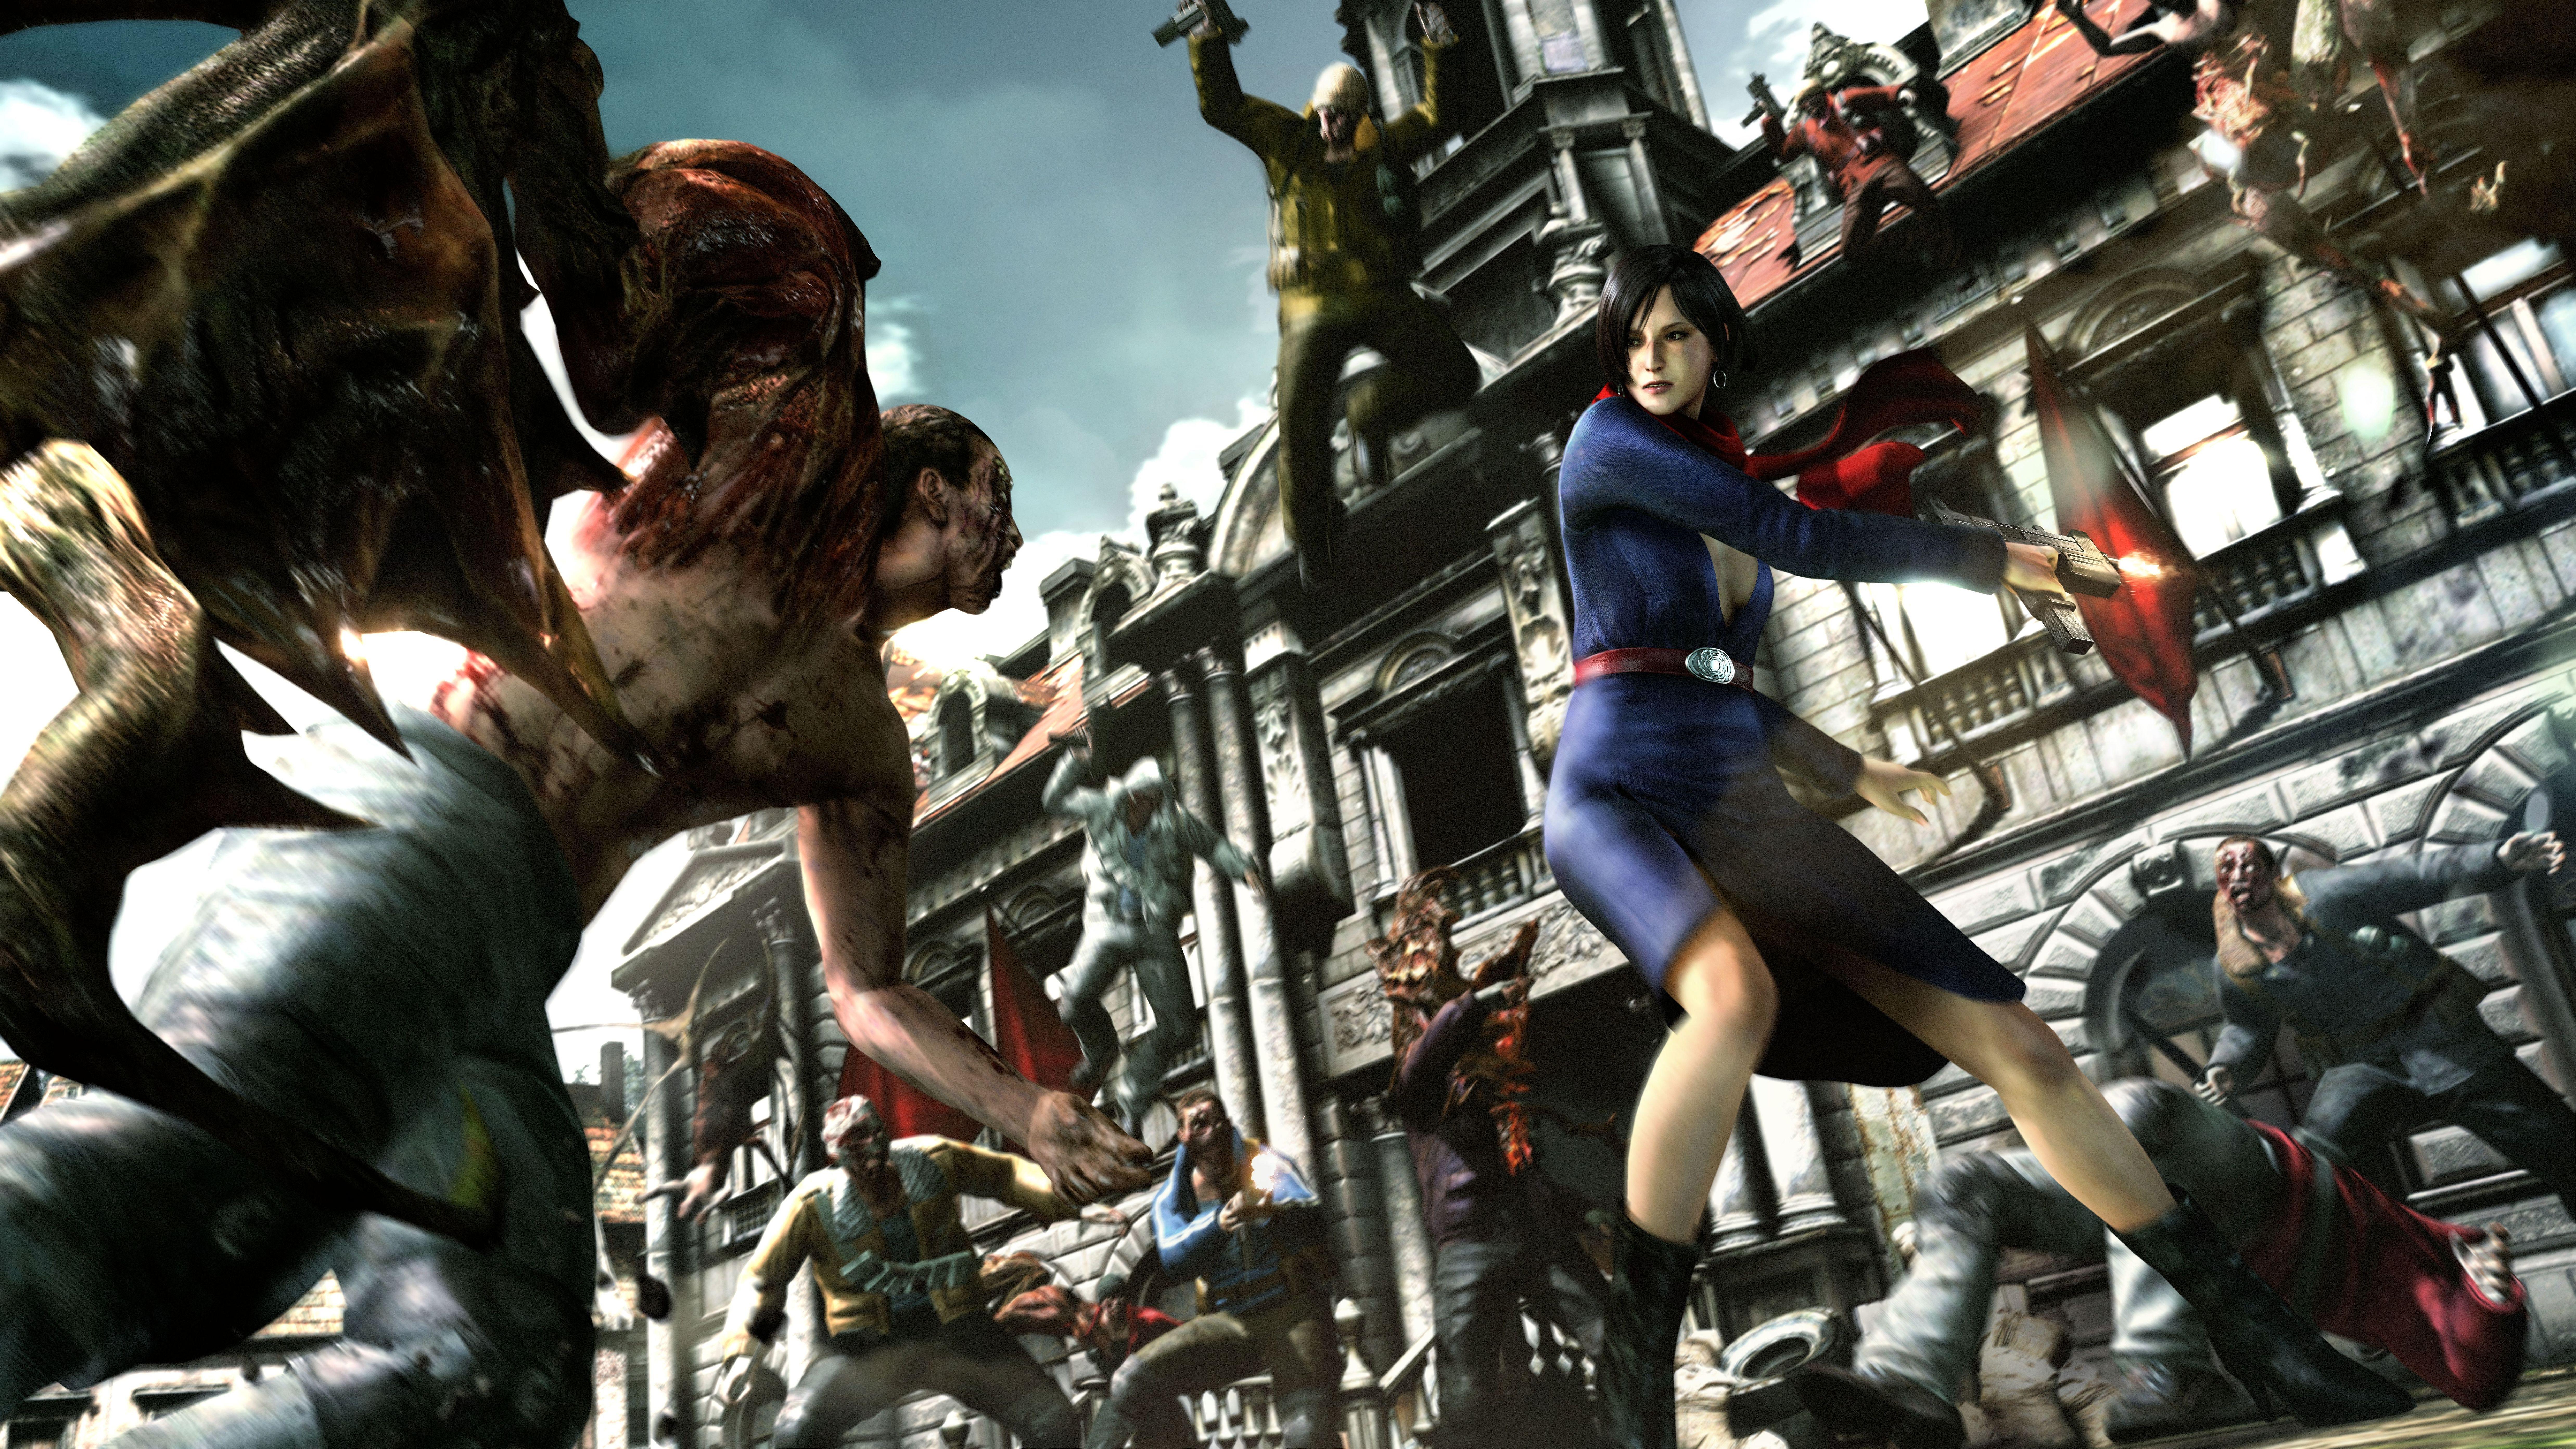 4K Ultra HD Resident Evil Wallpaper. Background